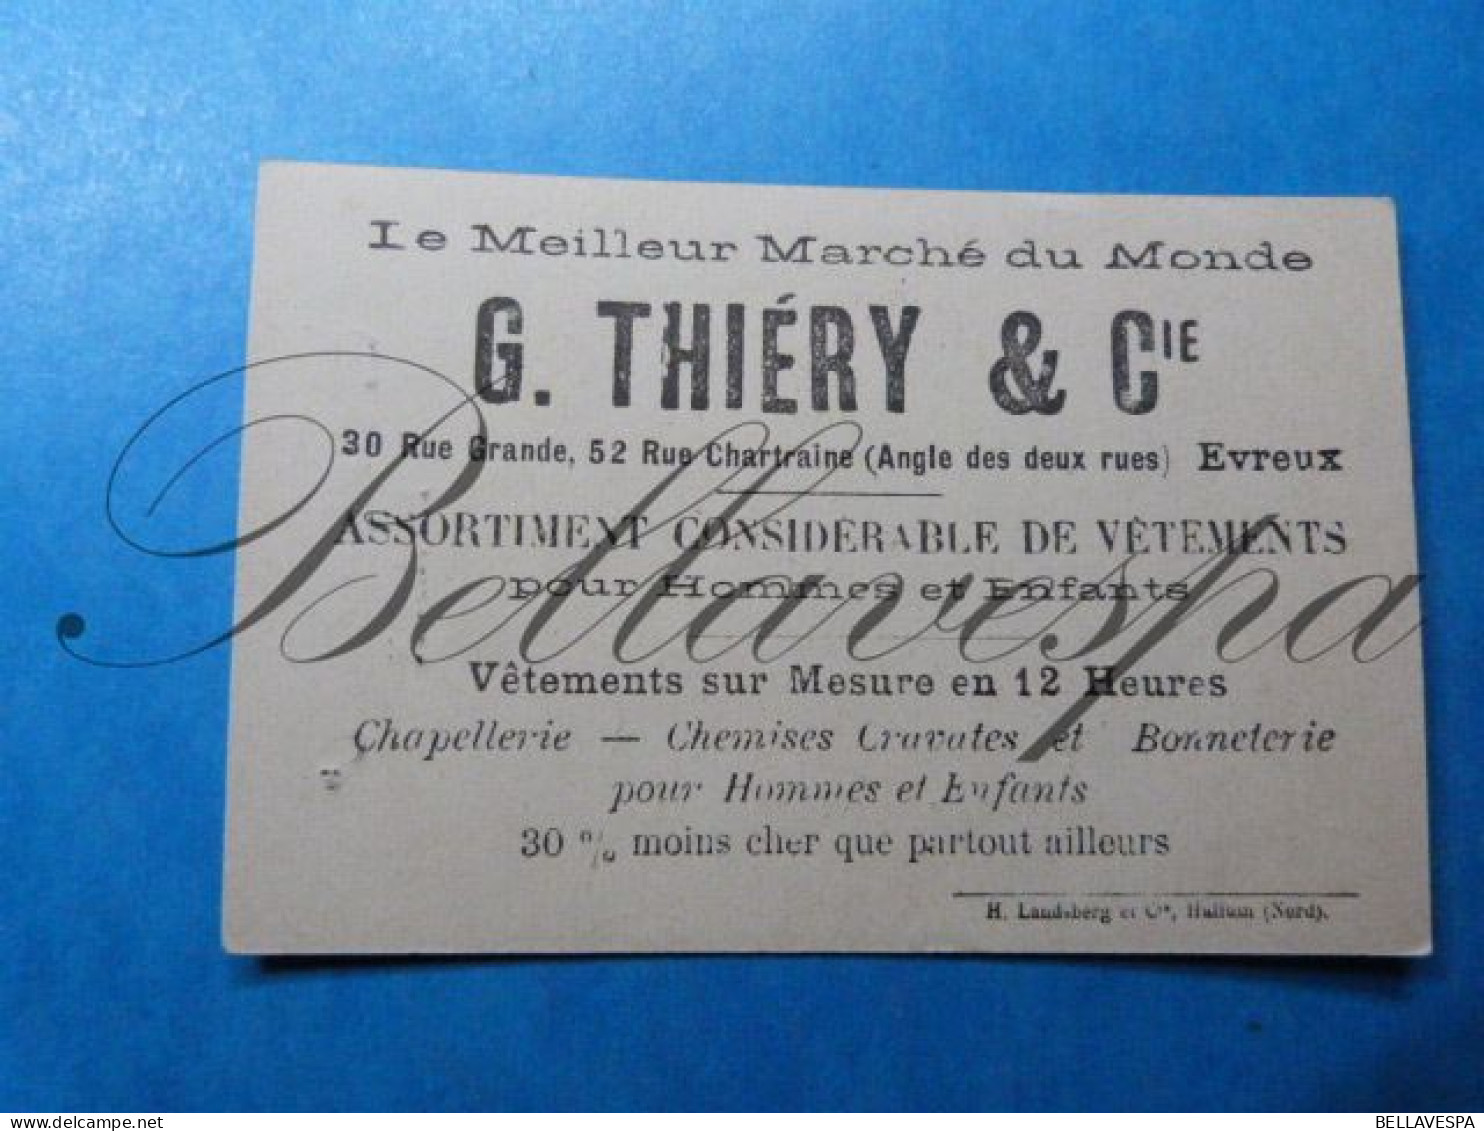 G.Thiery & Co lot x 5  prenten